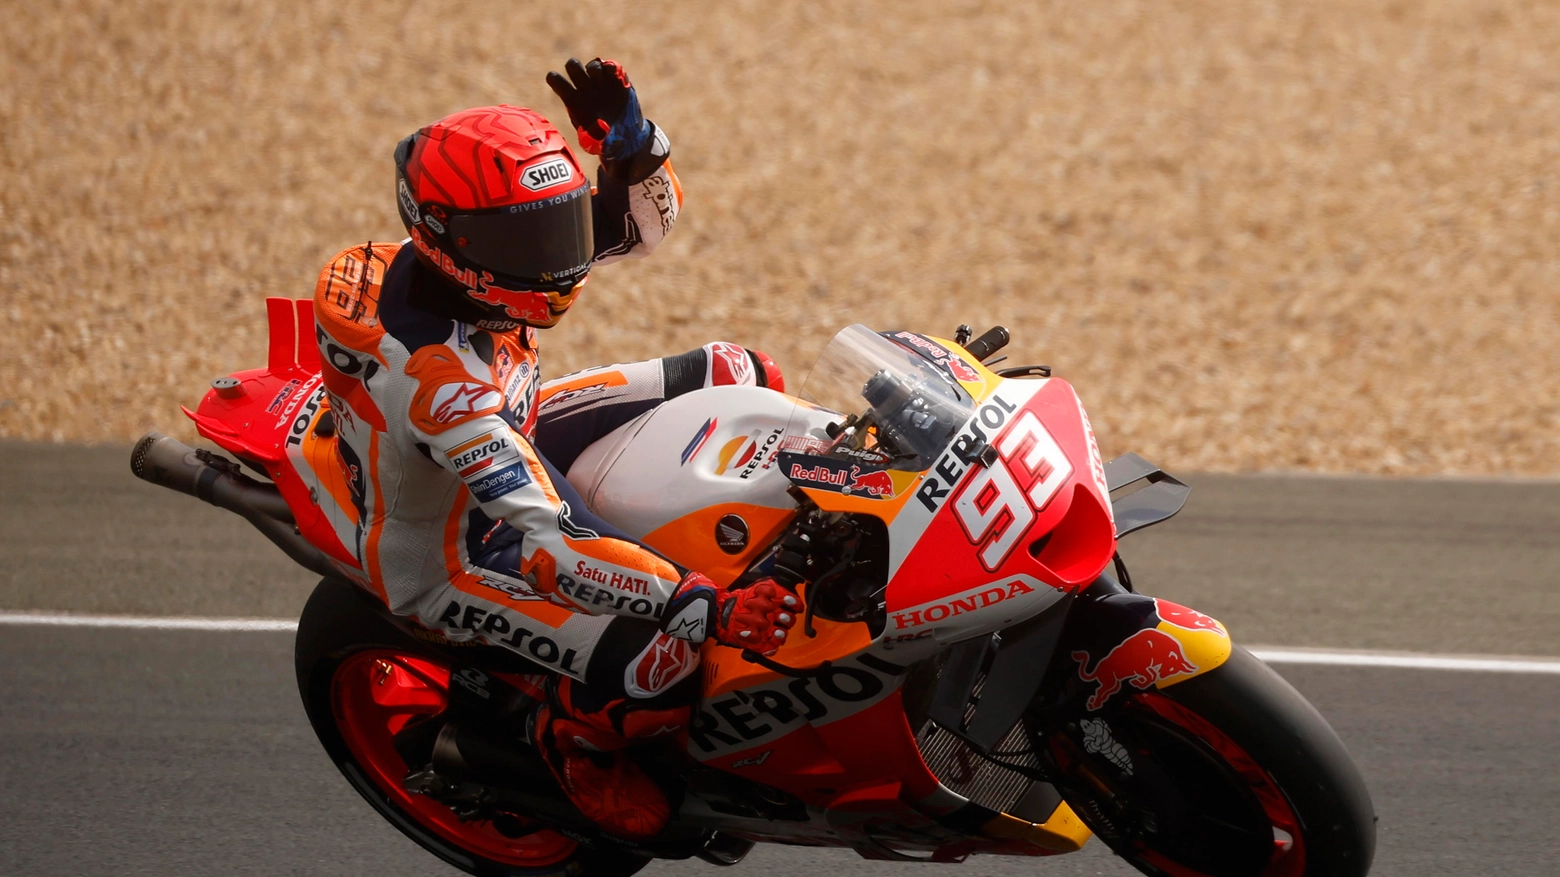 MotoGp, Marquez alla Ducati? Lorenzo sicuro: “Può andarci, vuole vincere”